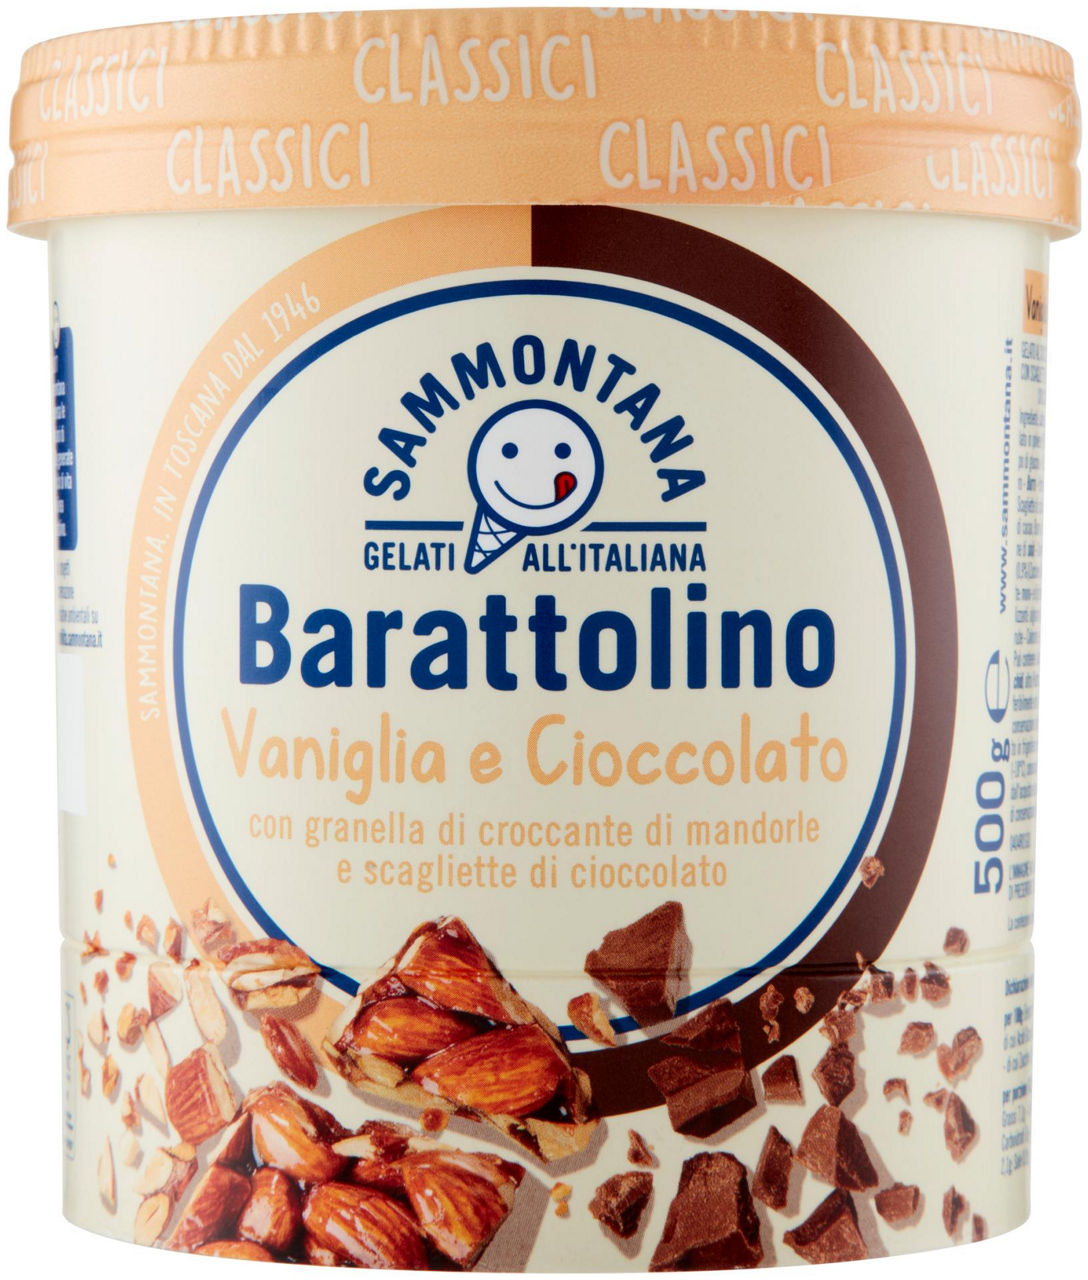 Barattolino classico vaniglia cioccolato sammontana g 500